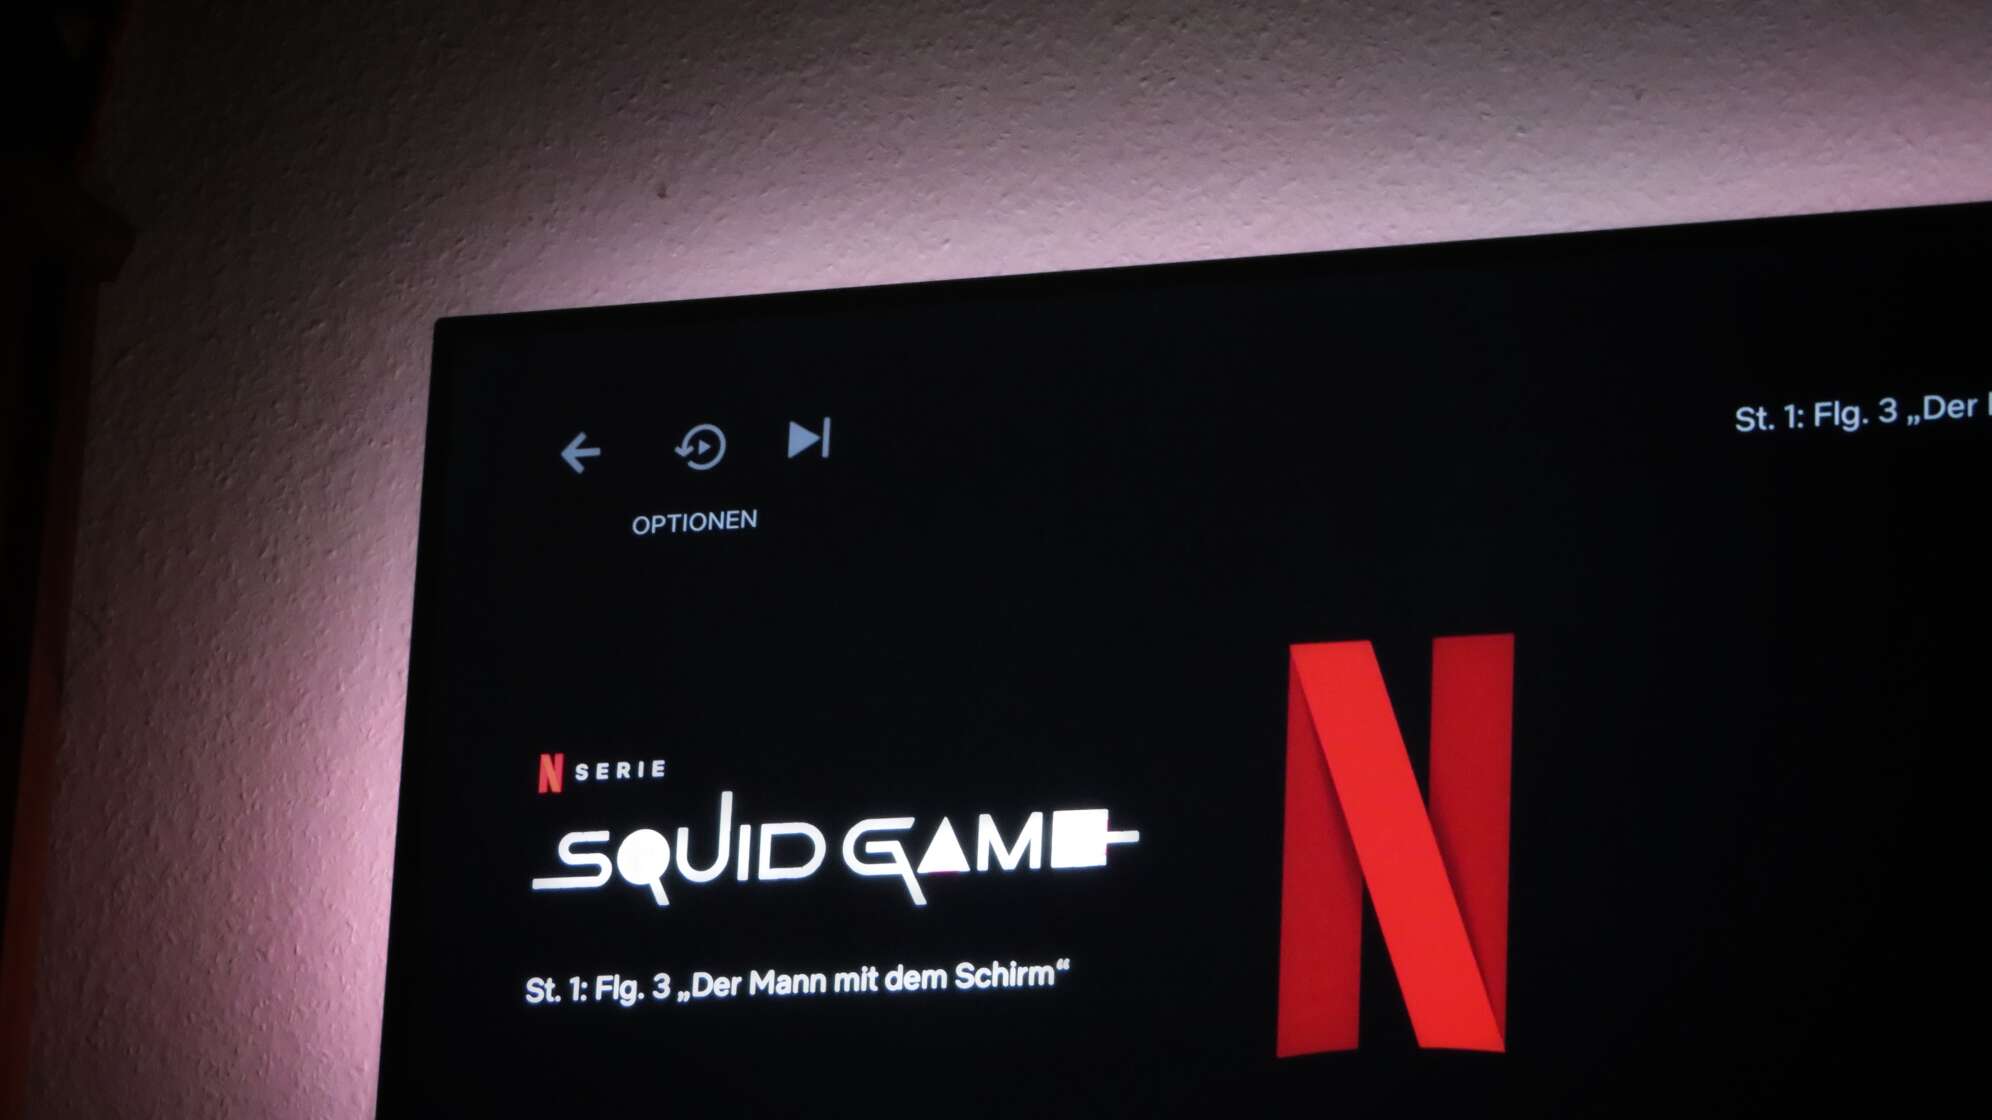 Ein Fernseher auf dem Netflix läuft